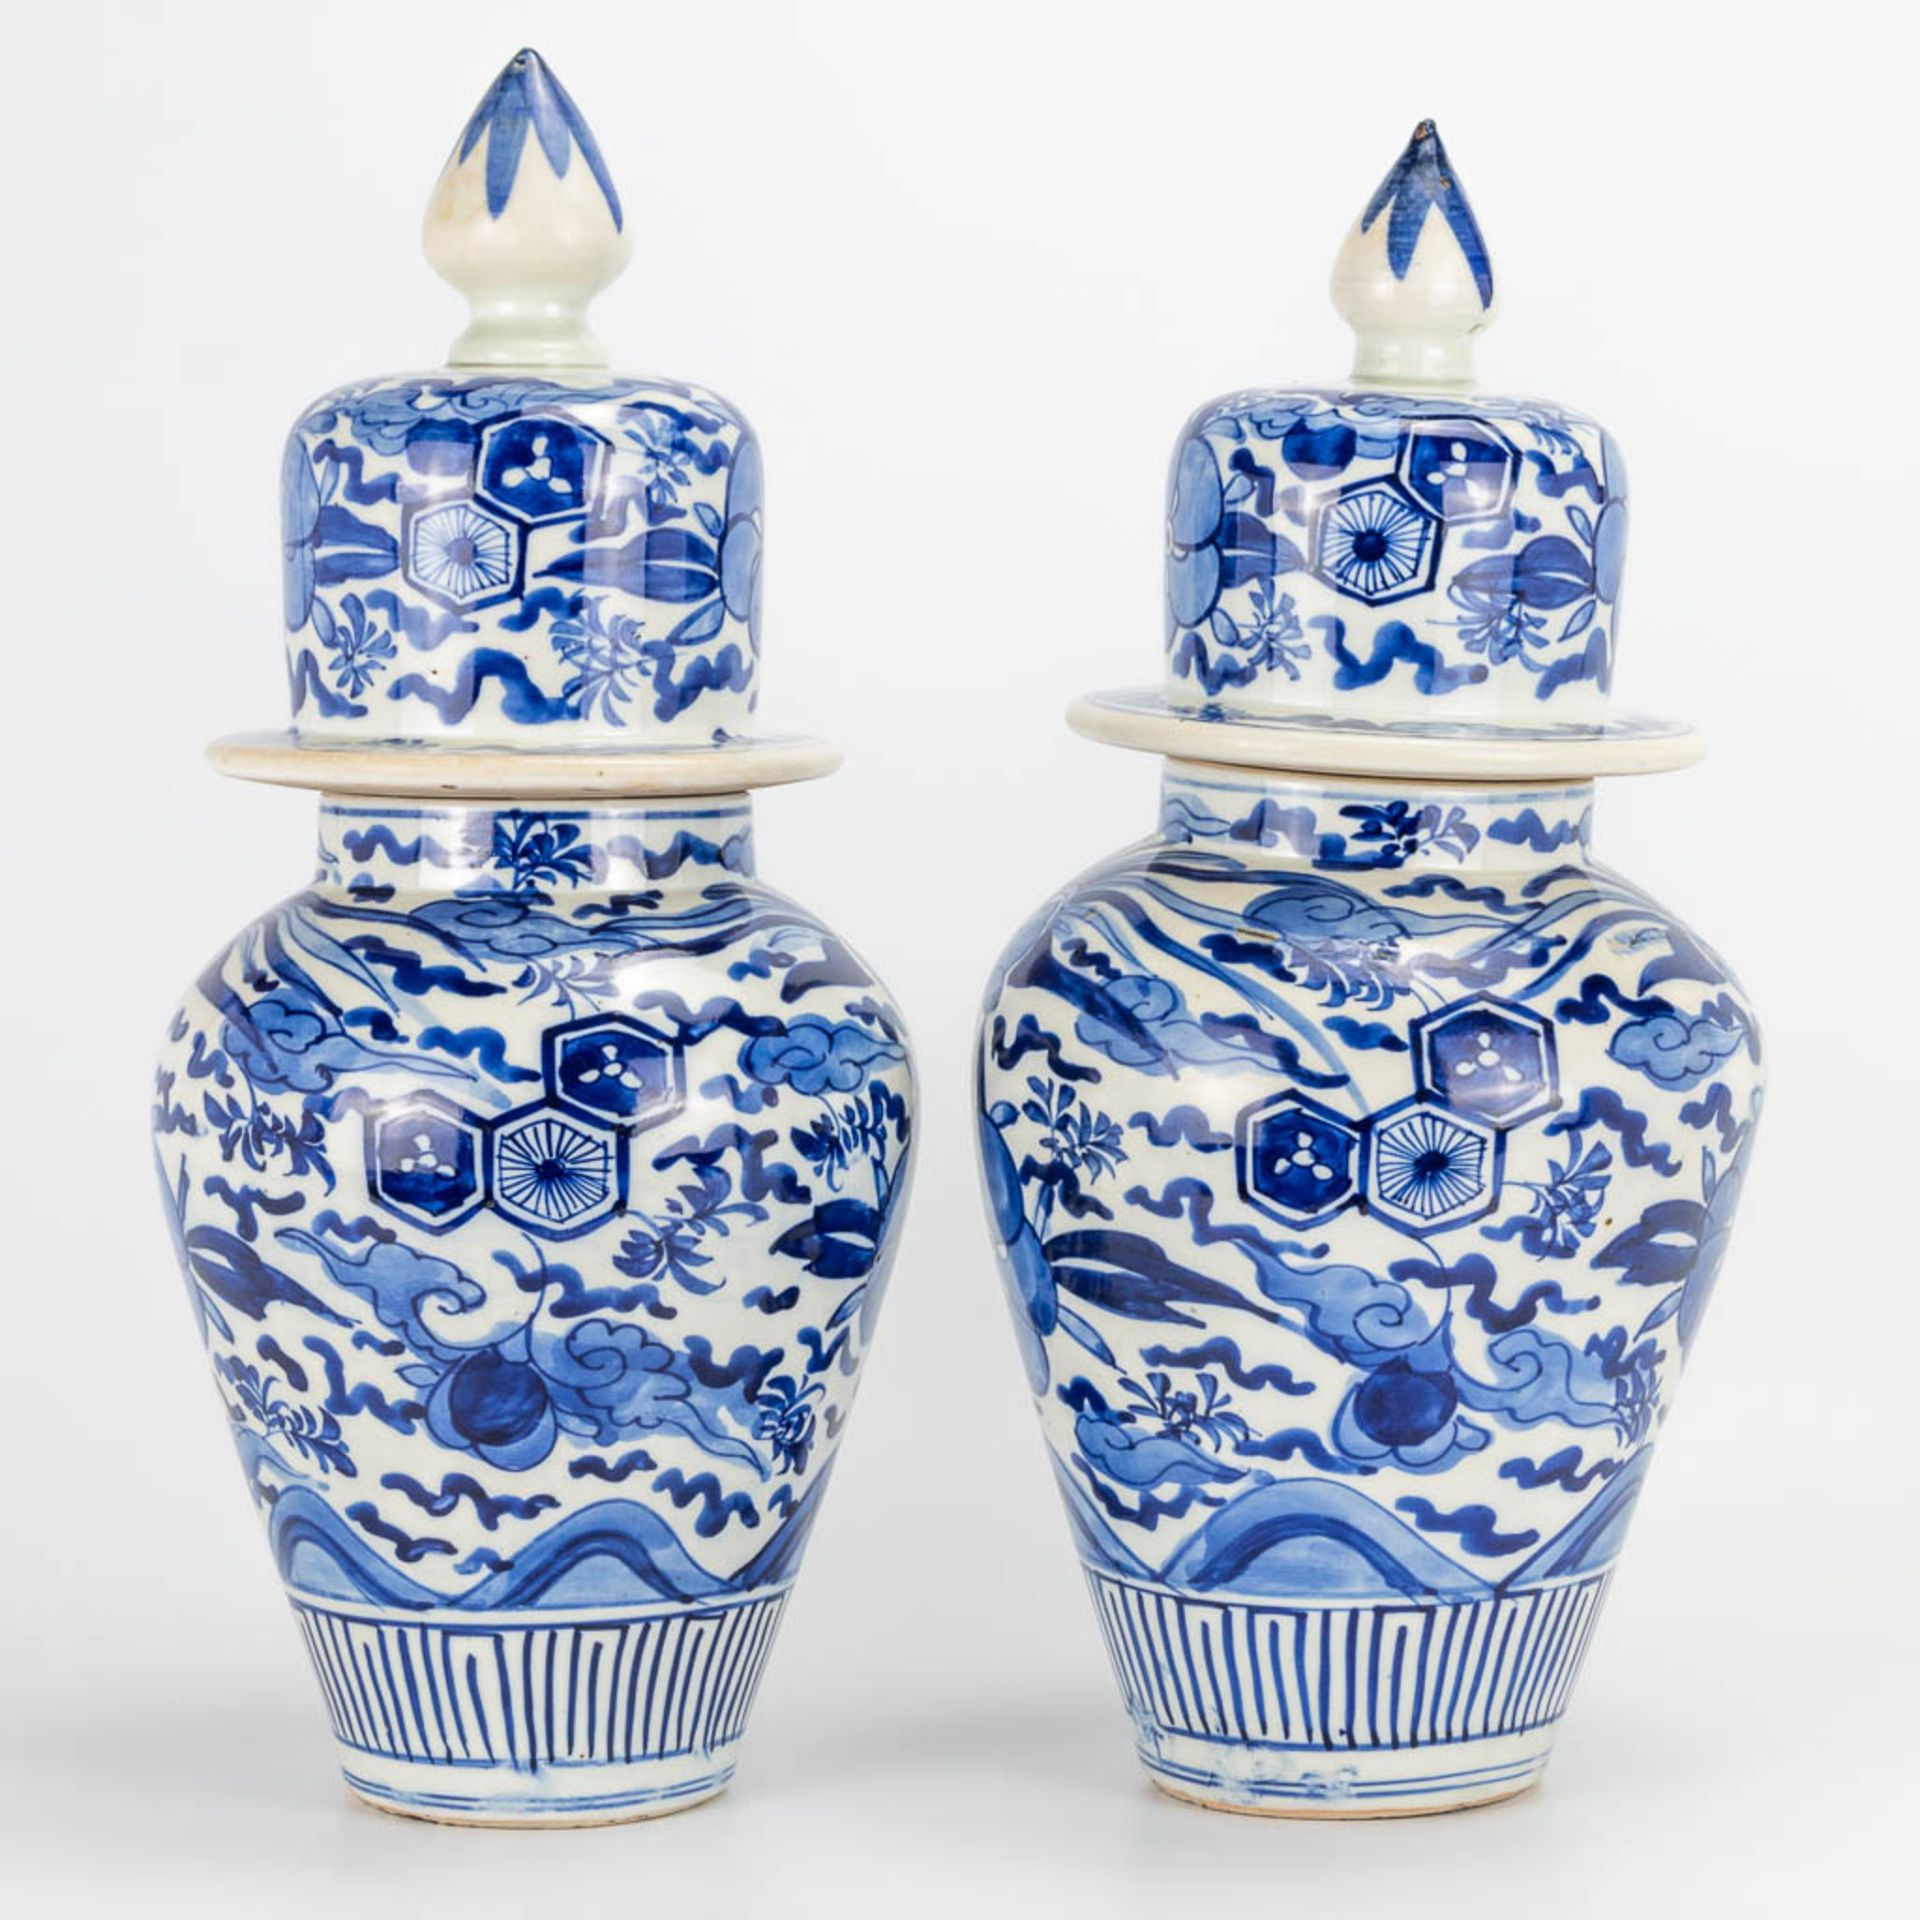 A pair of small Oriental vases wit lid, blue-white floral decor. (40 x 20 cm) - Bild 8 aus 20